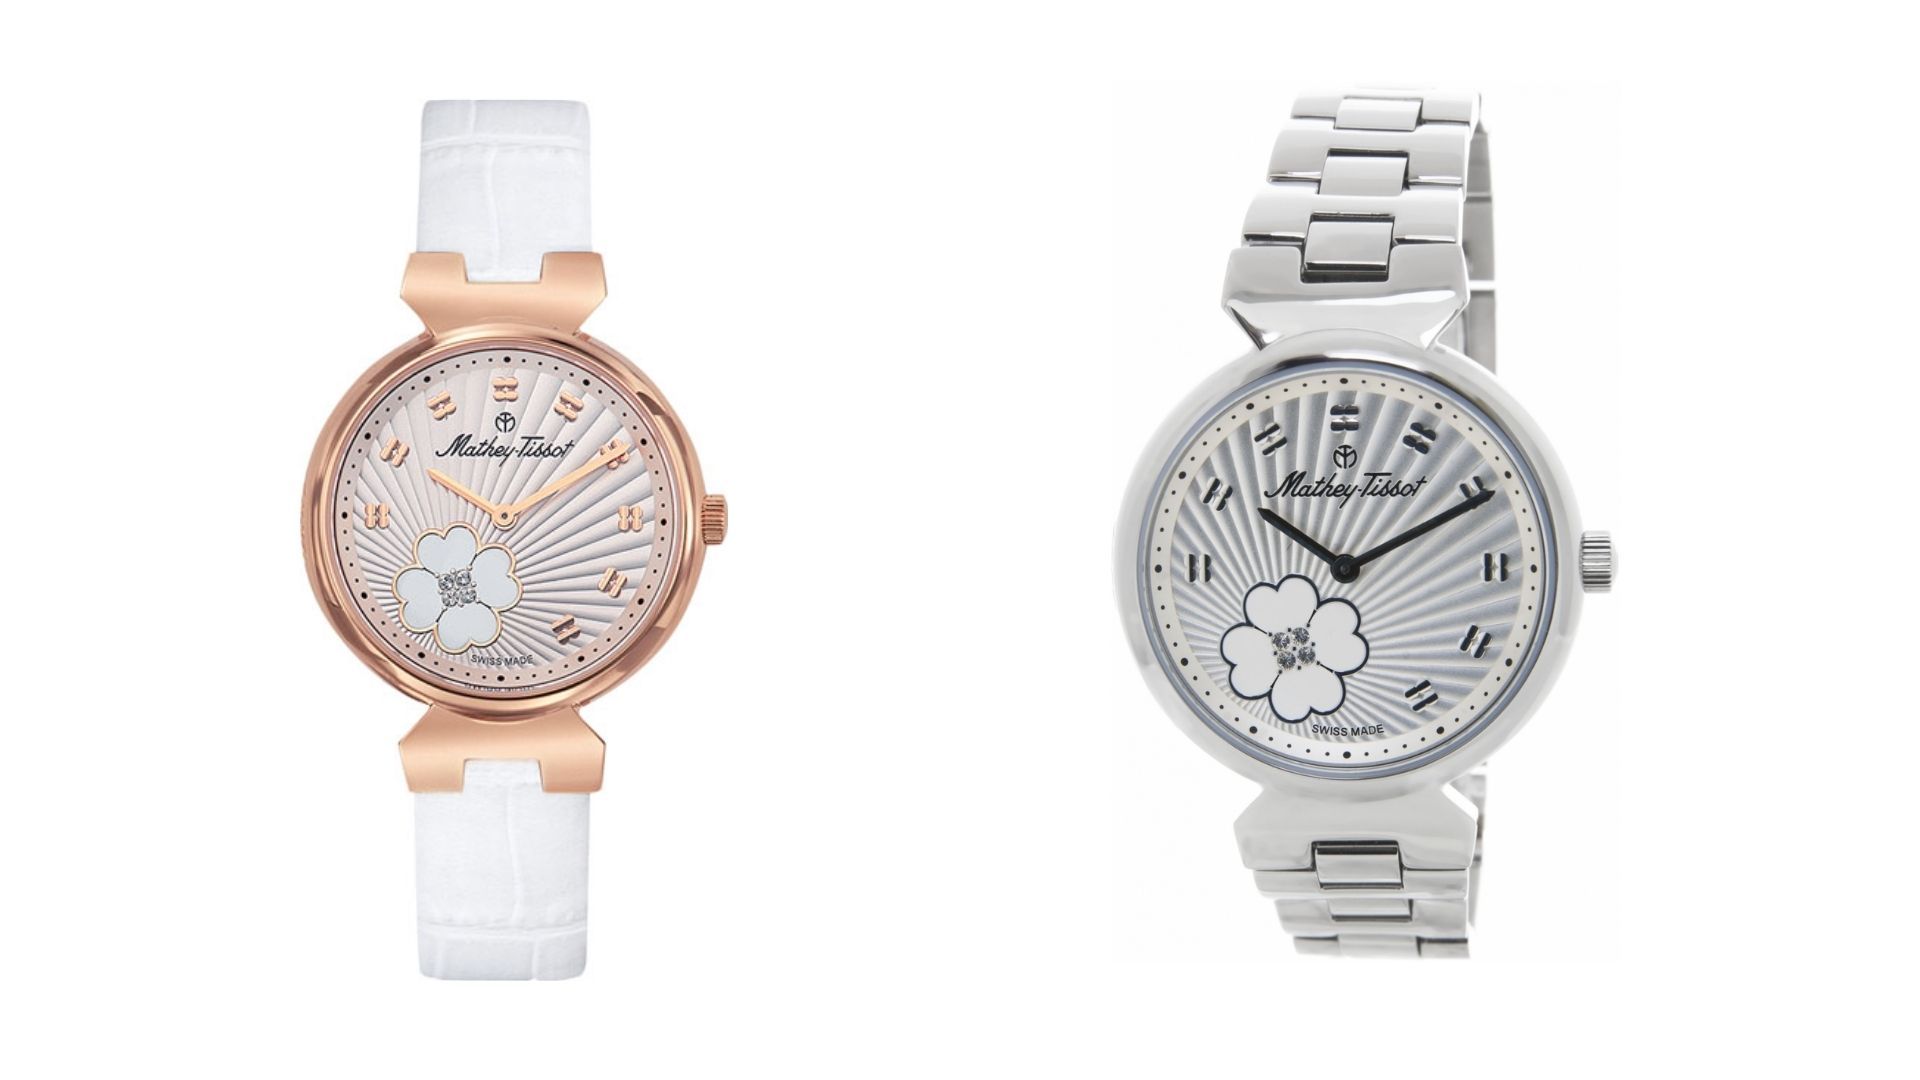 Престижные марки часов для женщин: обзор популярных моделей